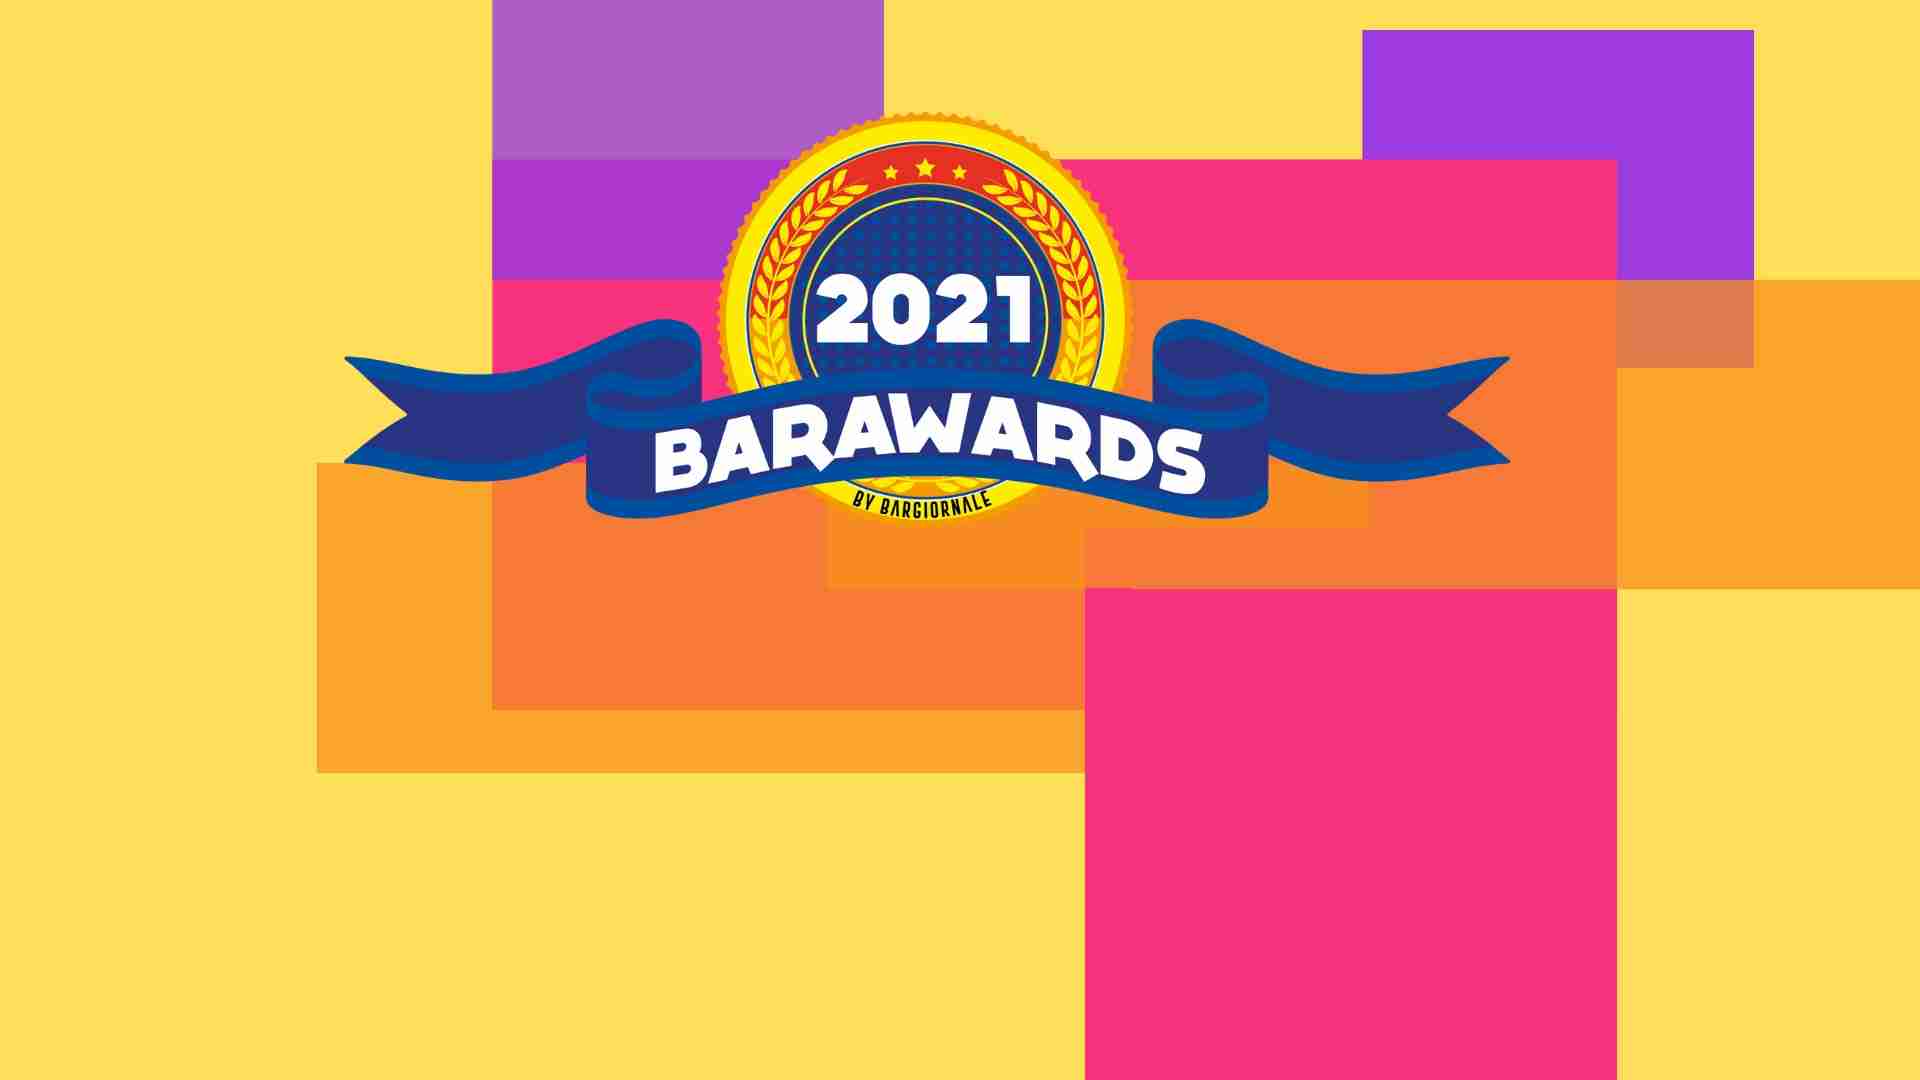 barawards 2021 bartender 2021